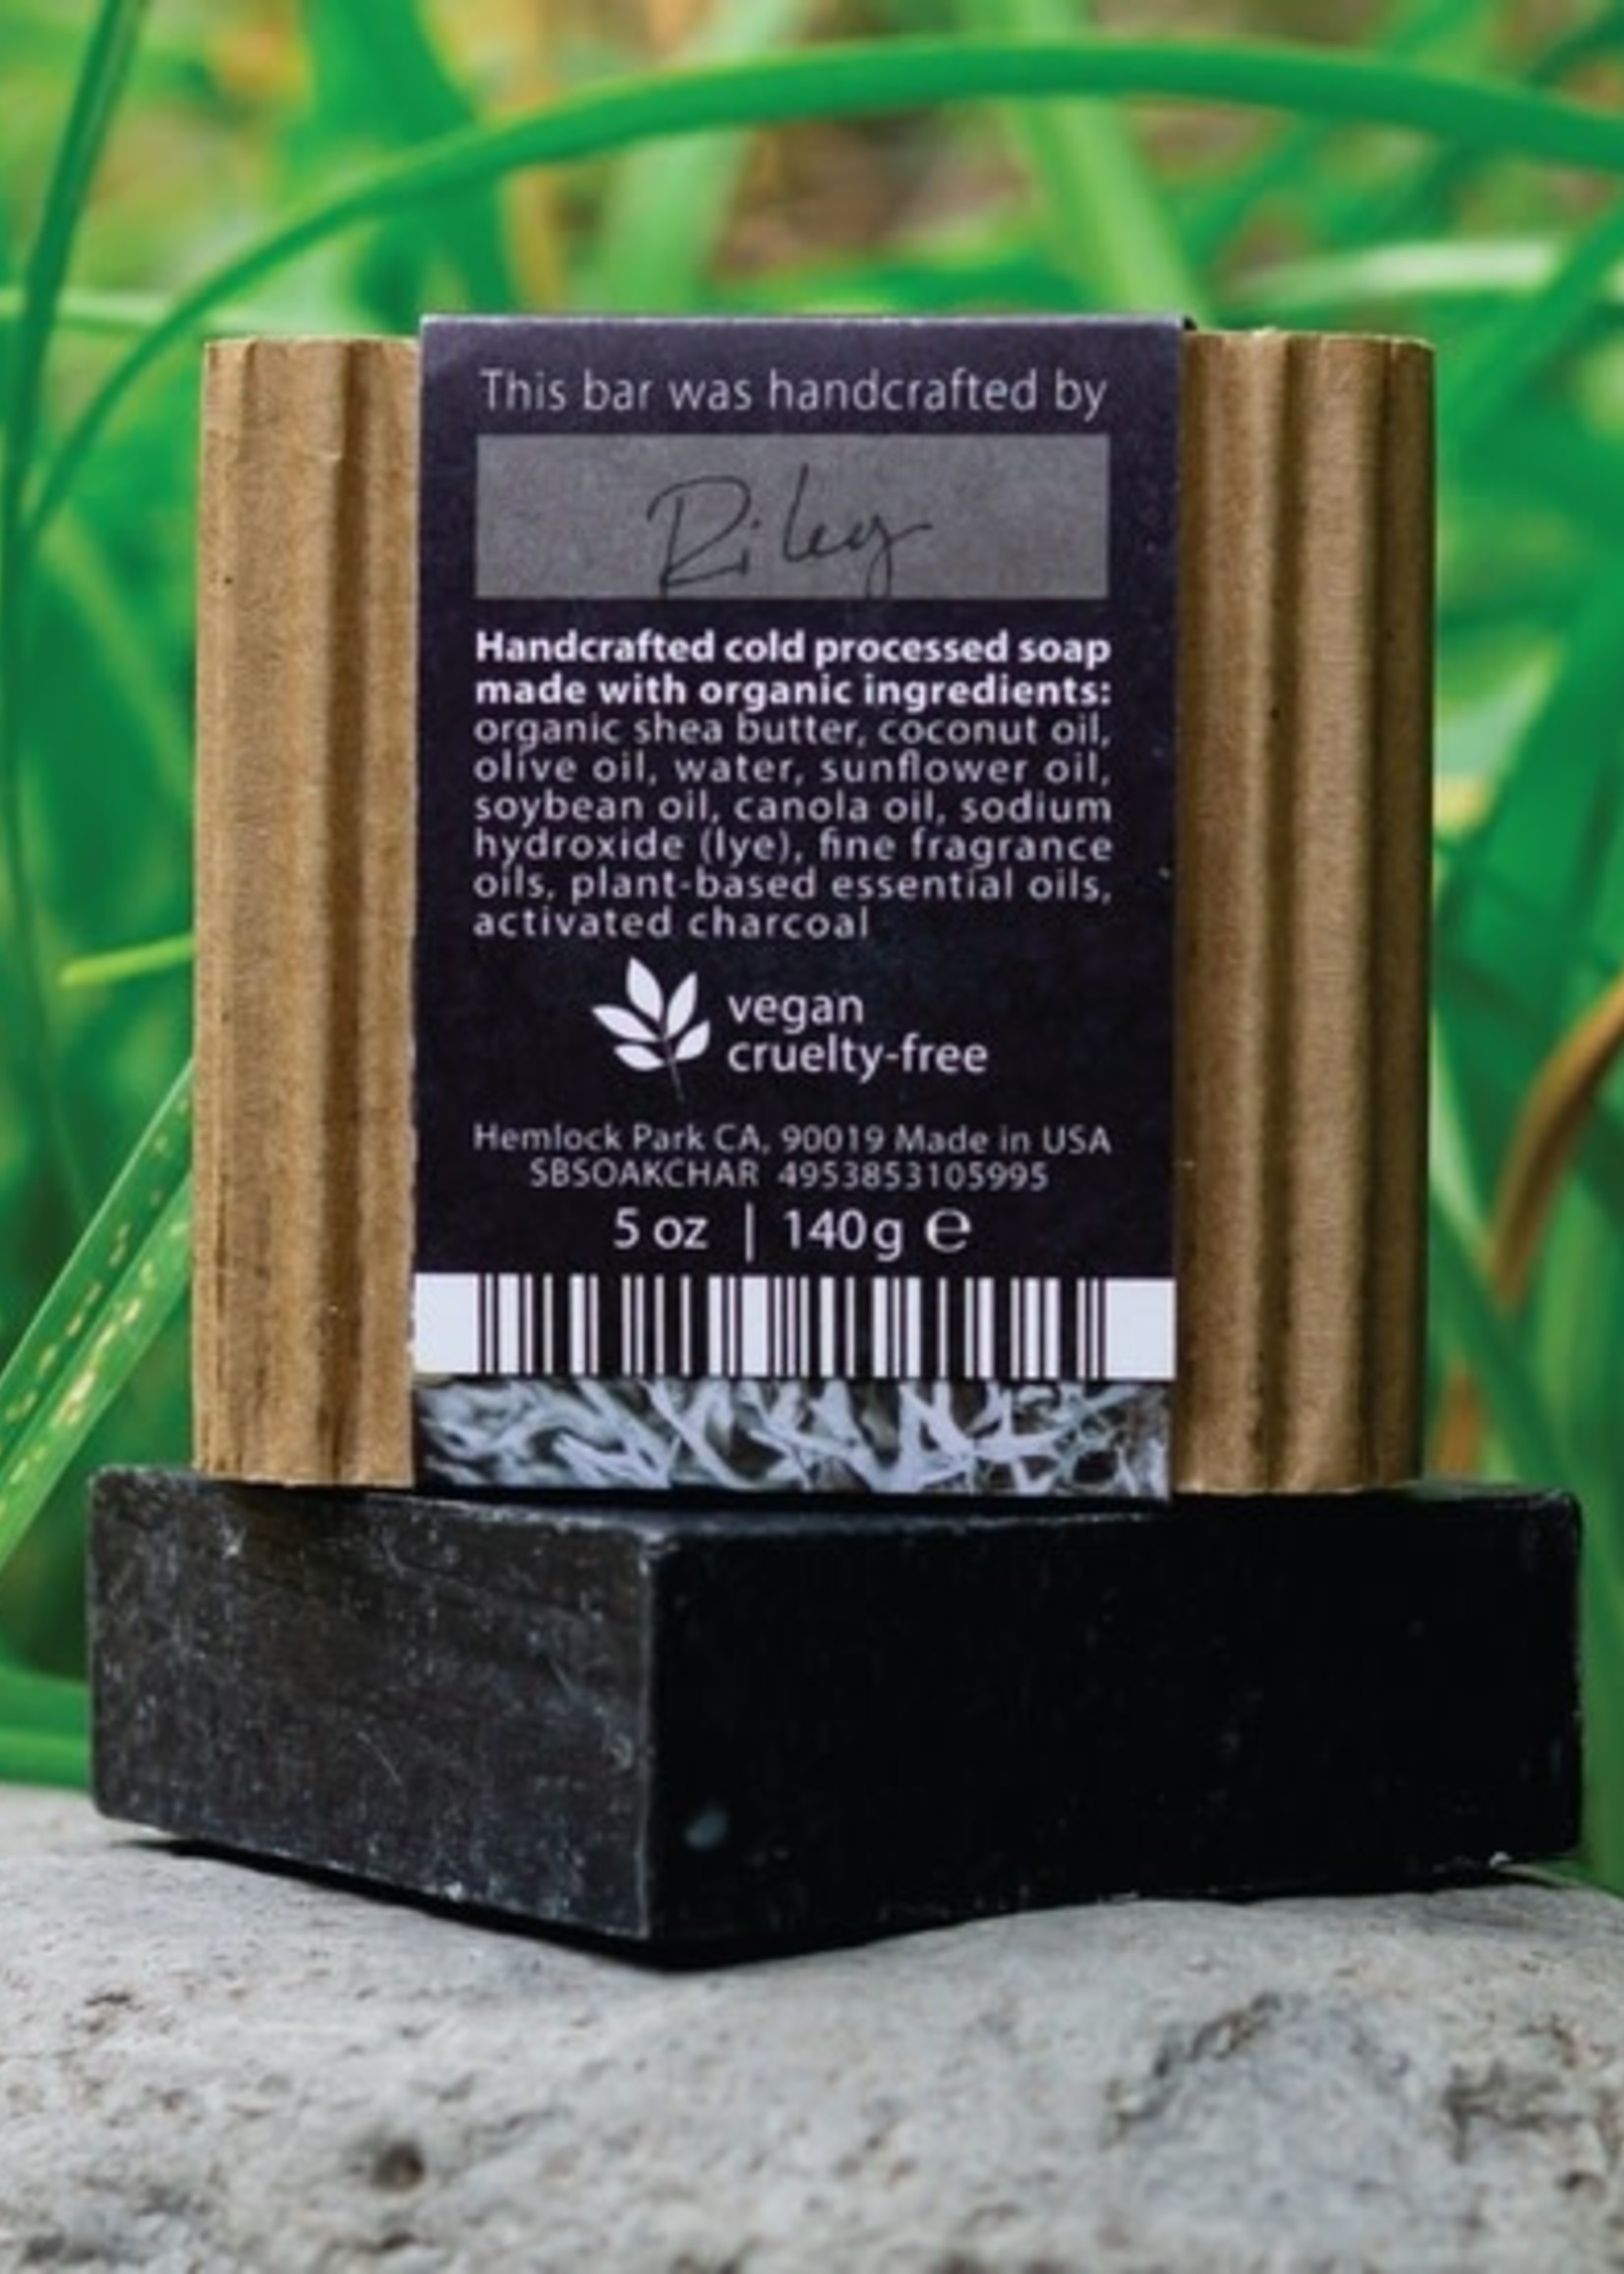 Hemlock Park Oakmoss & Charcoal Organic Soap